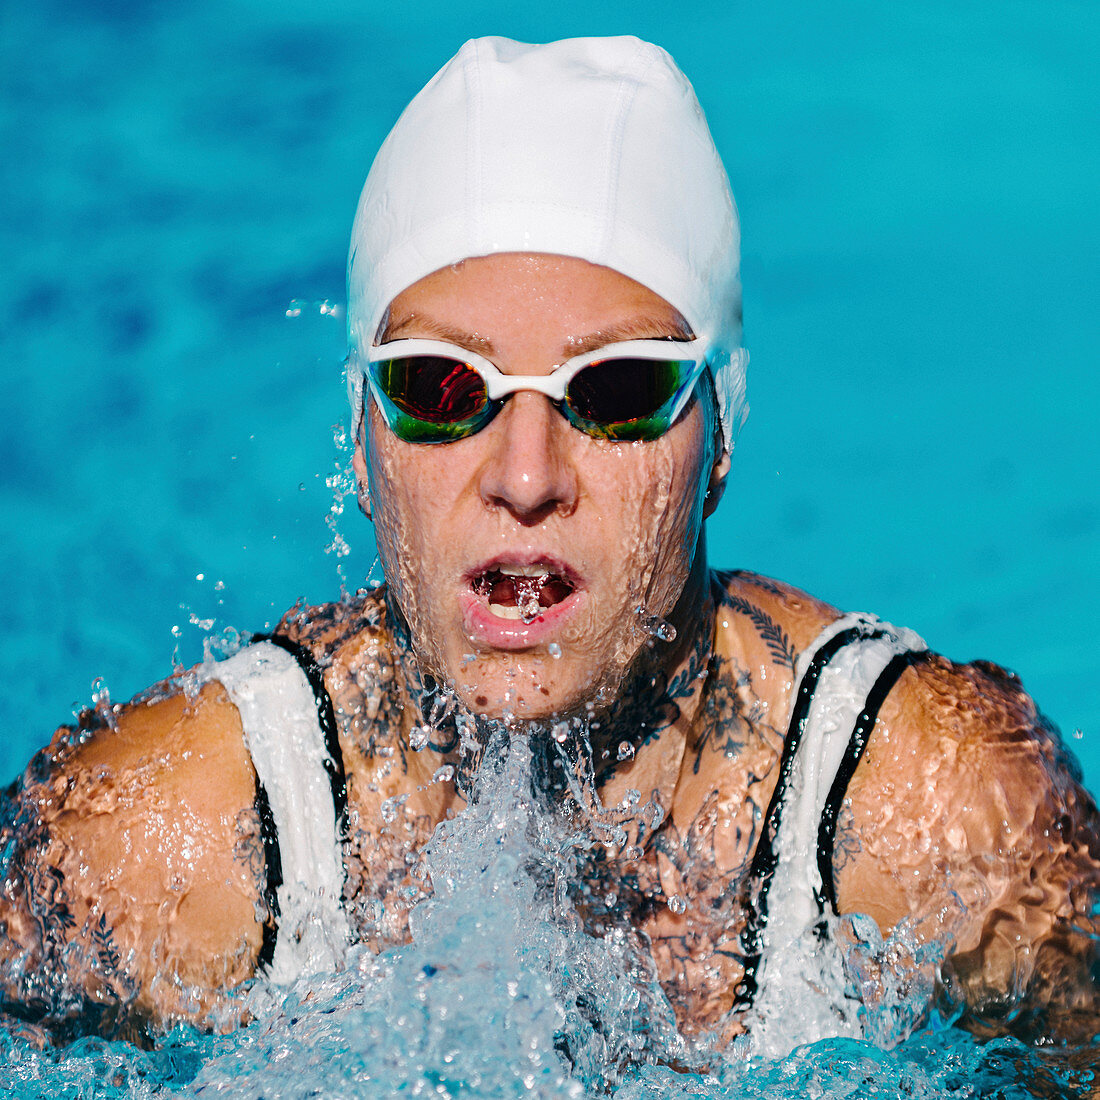 Woman swimming breaststroke